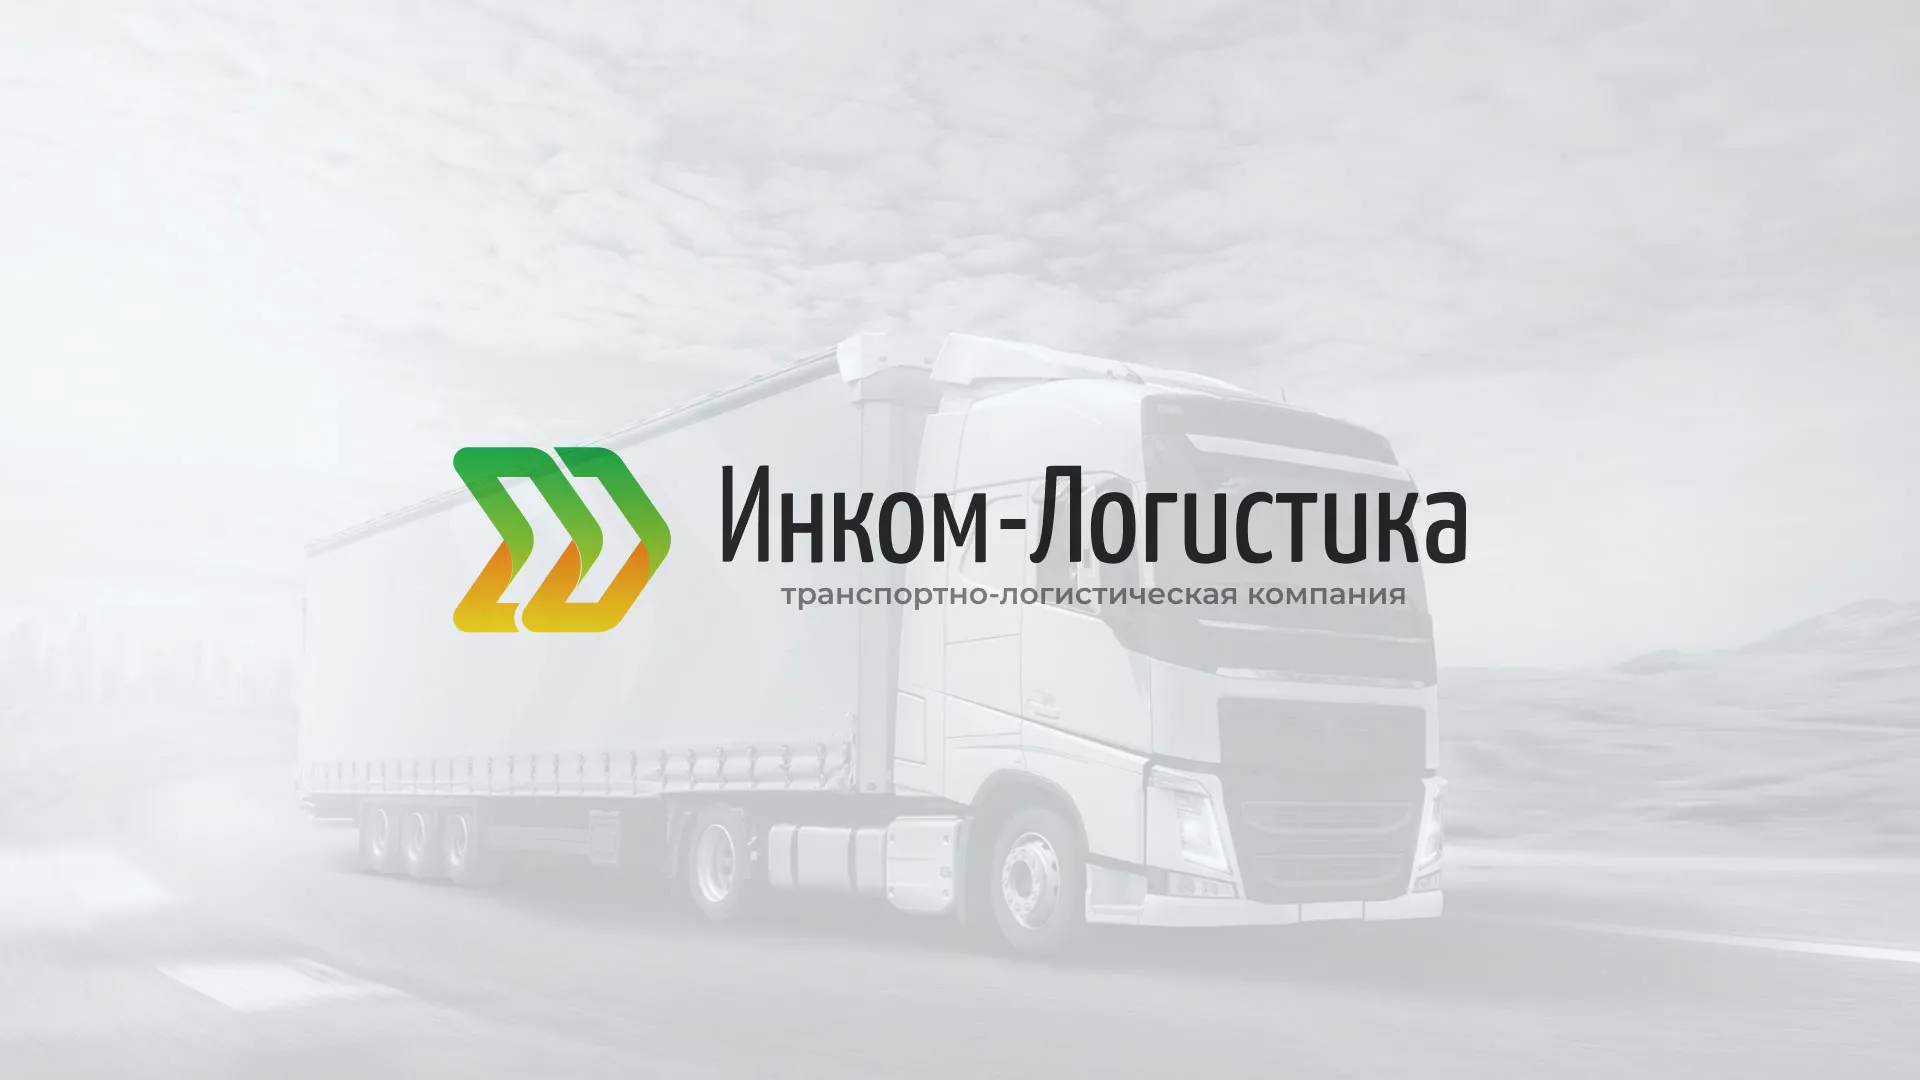 Разработка логотипа и сайта компании «Инком-Логистика» в Московском